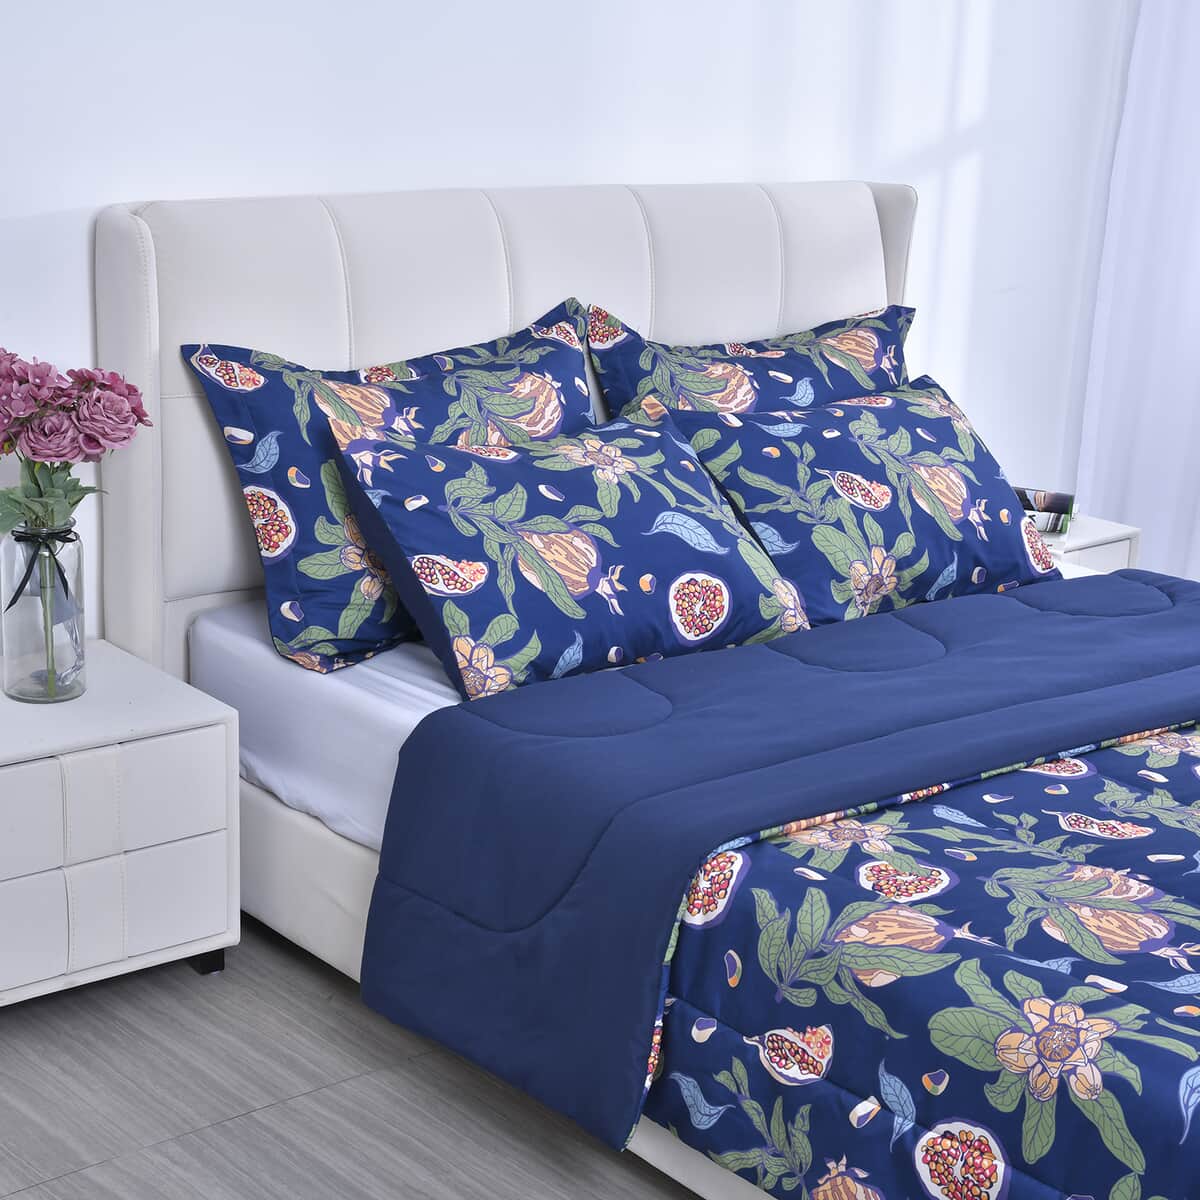 HOMESMART Blue Digital Floral Printed Microfiber 5pcs Comforter Set - Queen image number 2